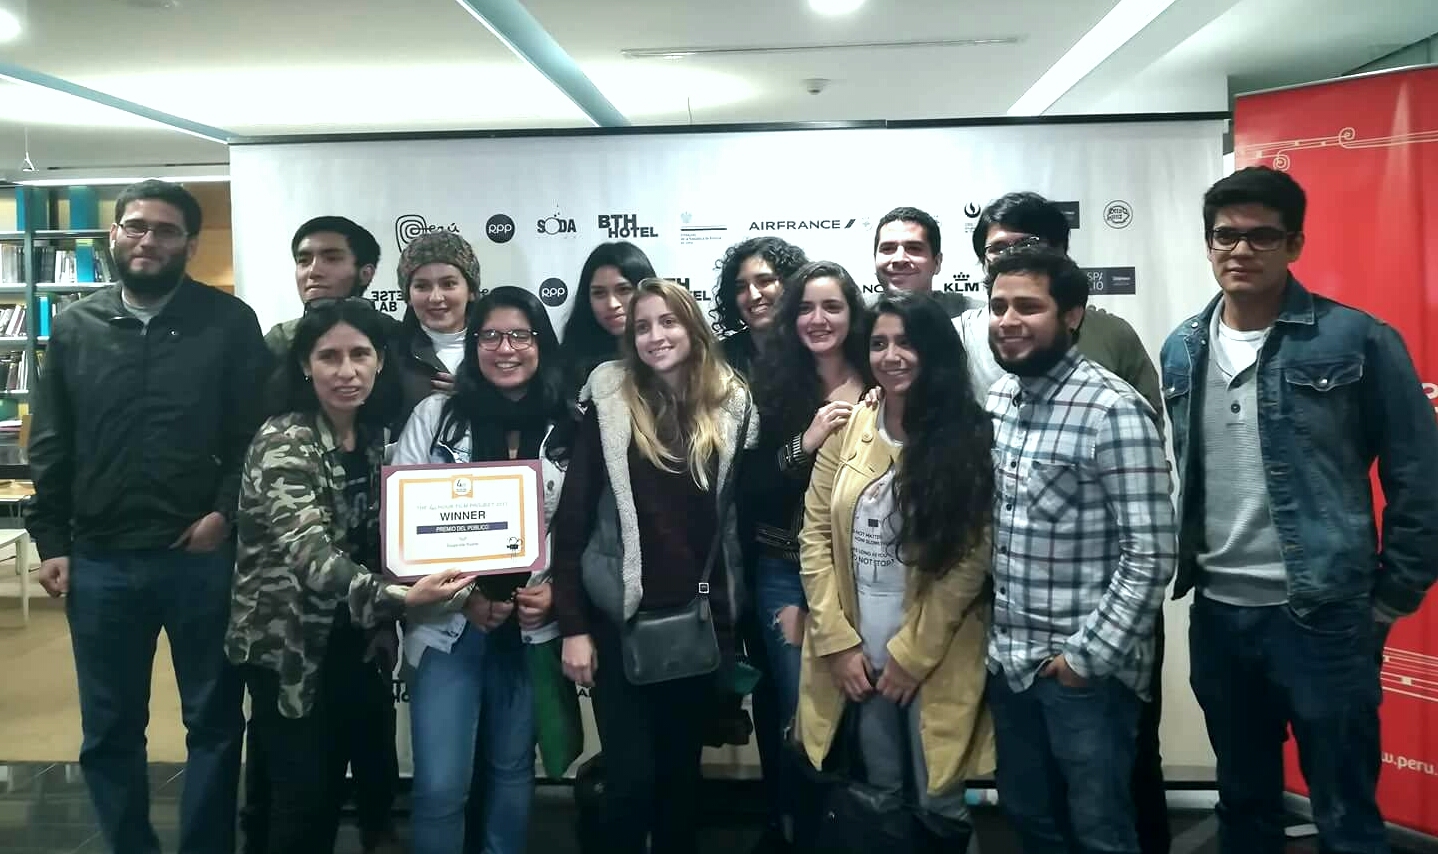 Alumnos y egresados de la upc ganan en la competencia cinematográfica “lima 48 hour film project”